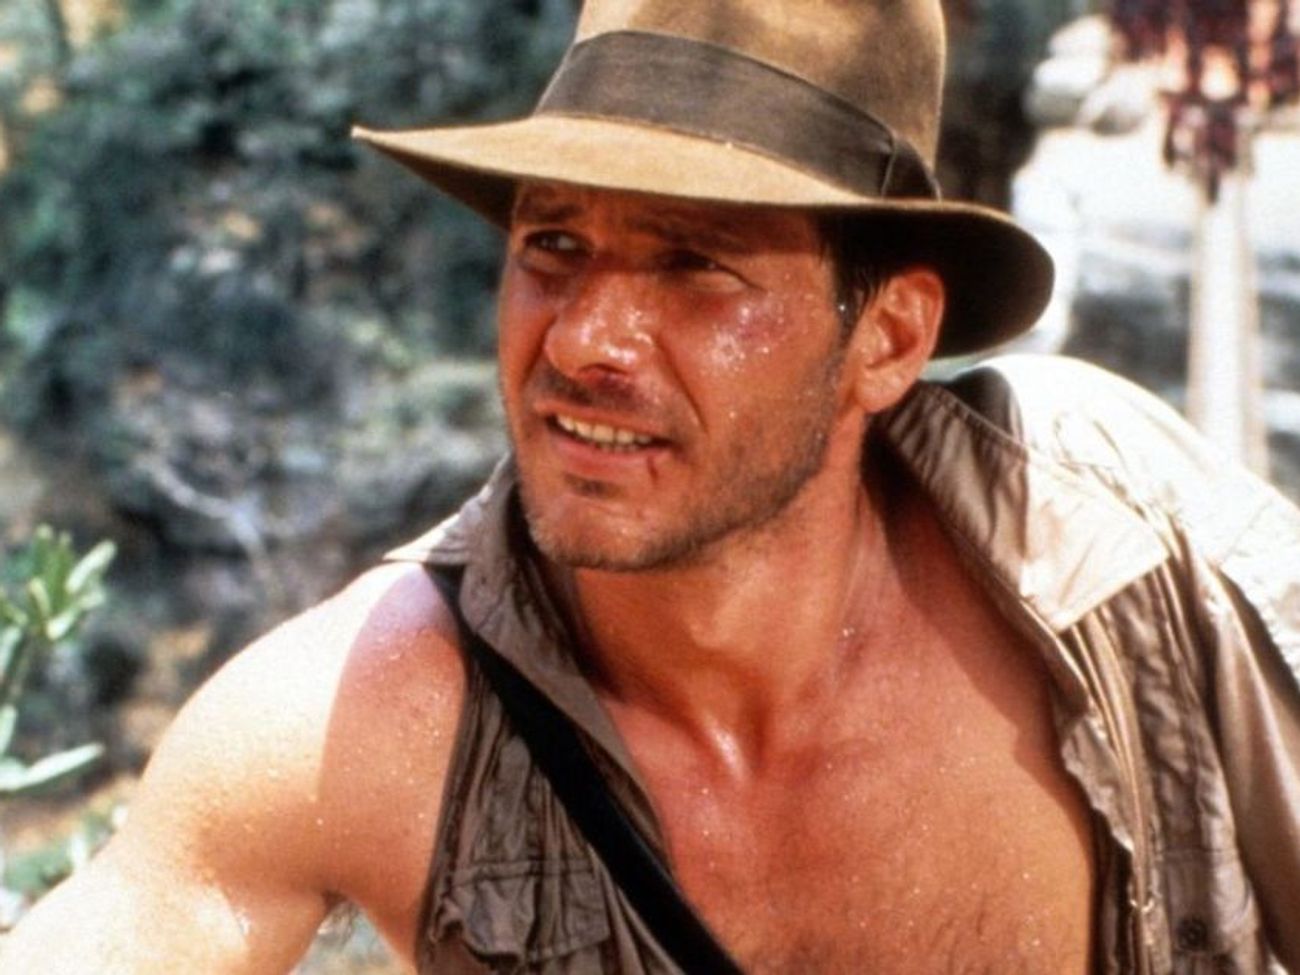 Harrison Ford va coiffer le mythique chapeau d'Indiana Jones pour